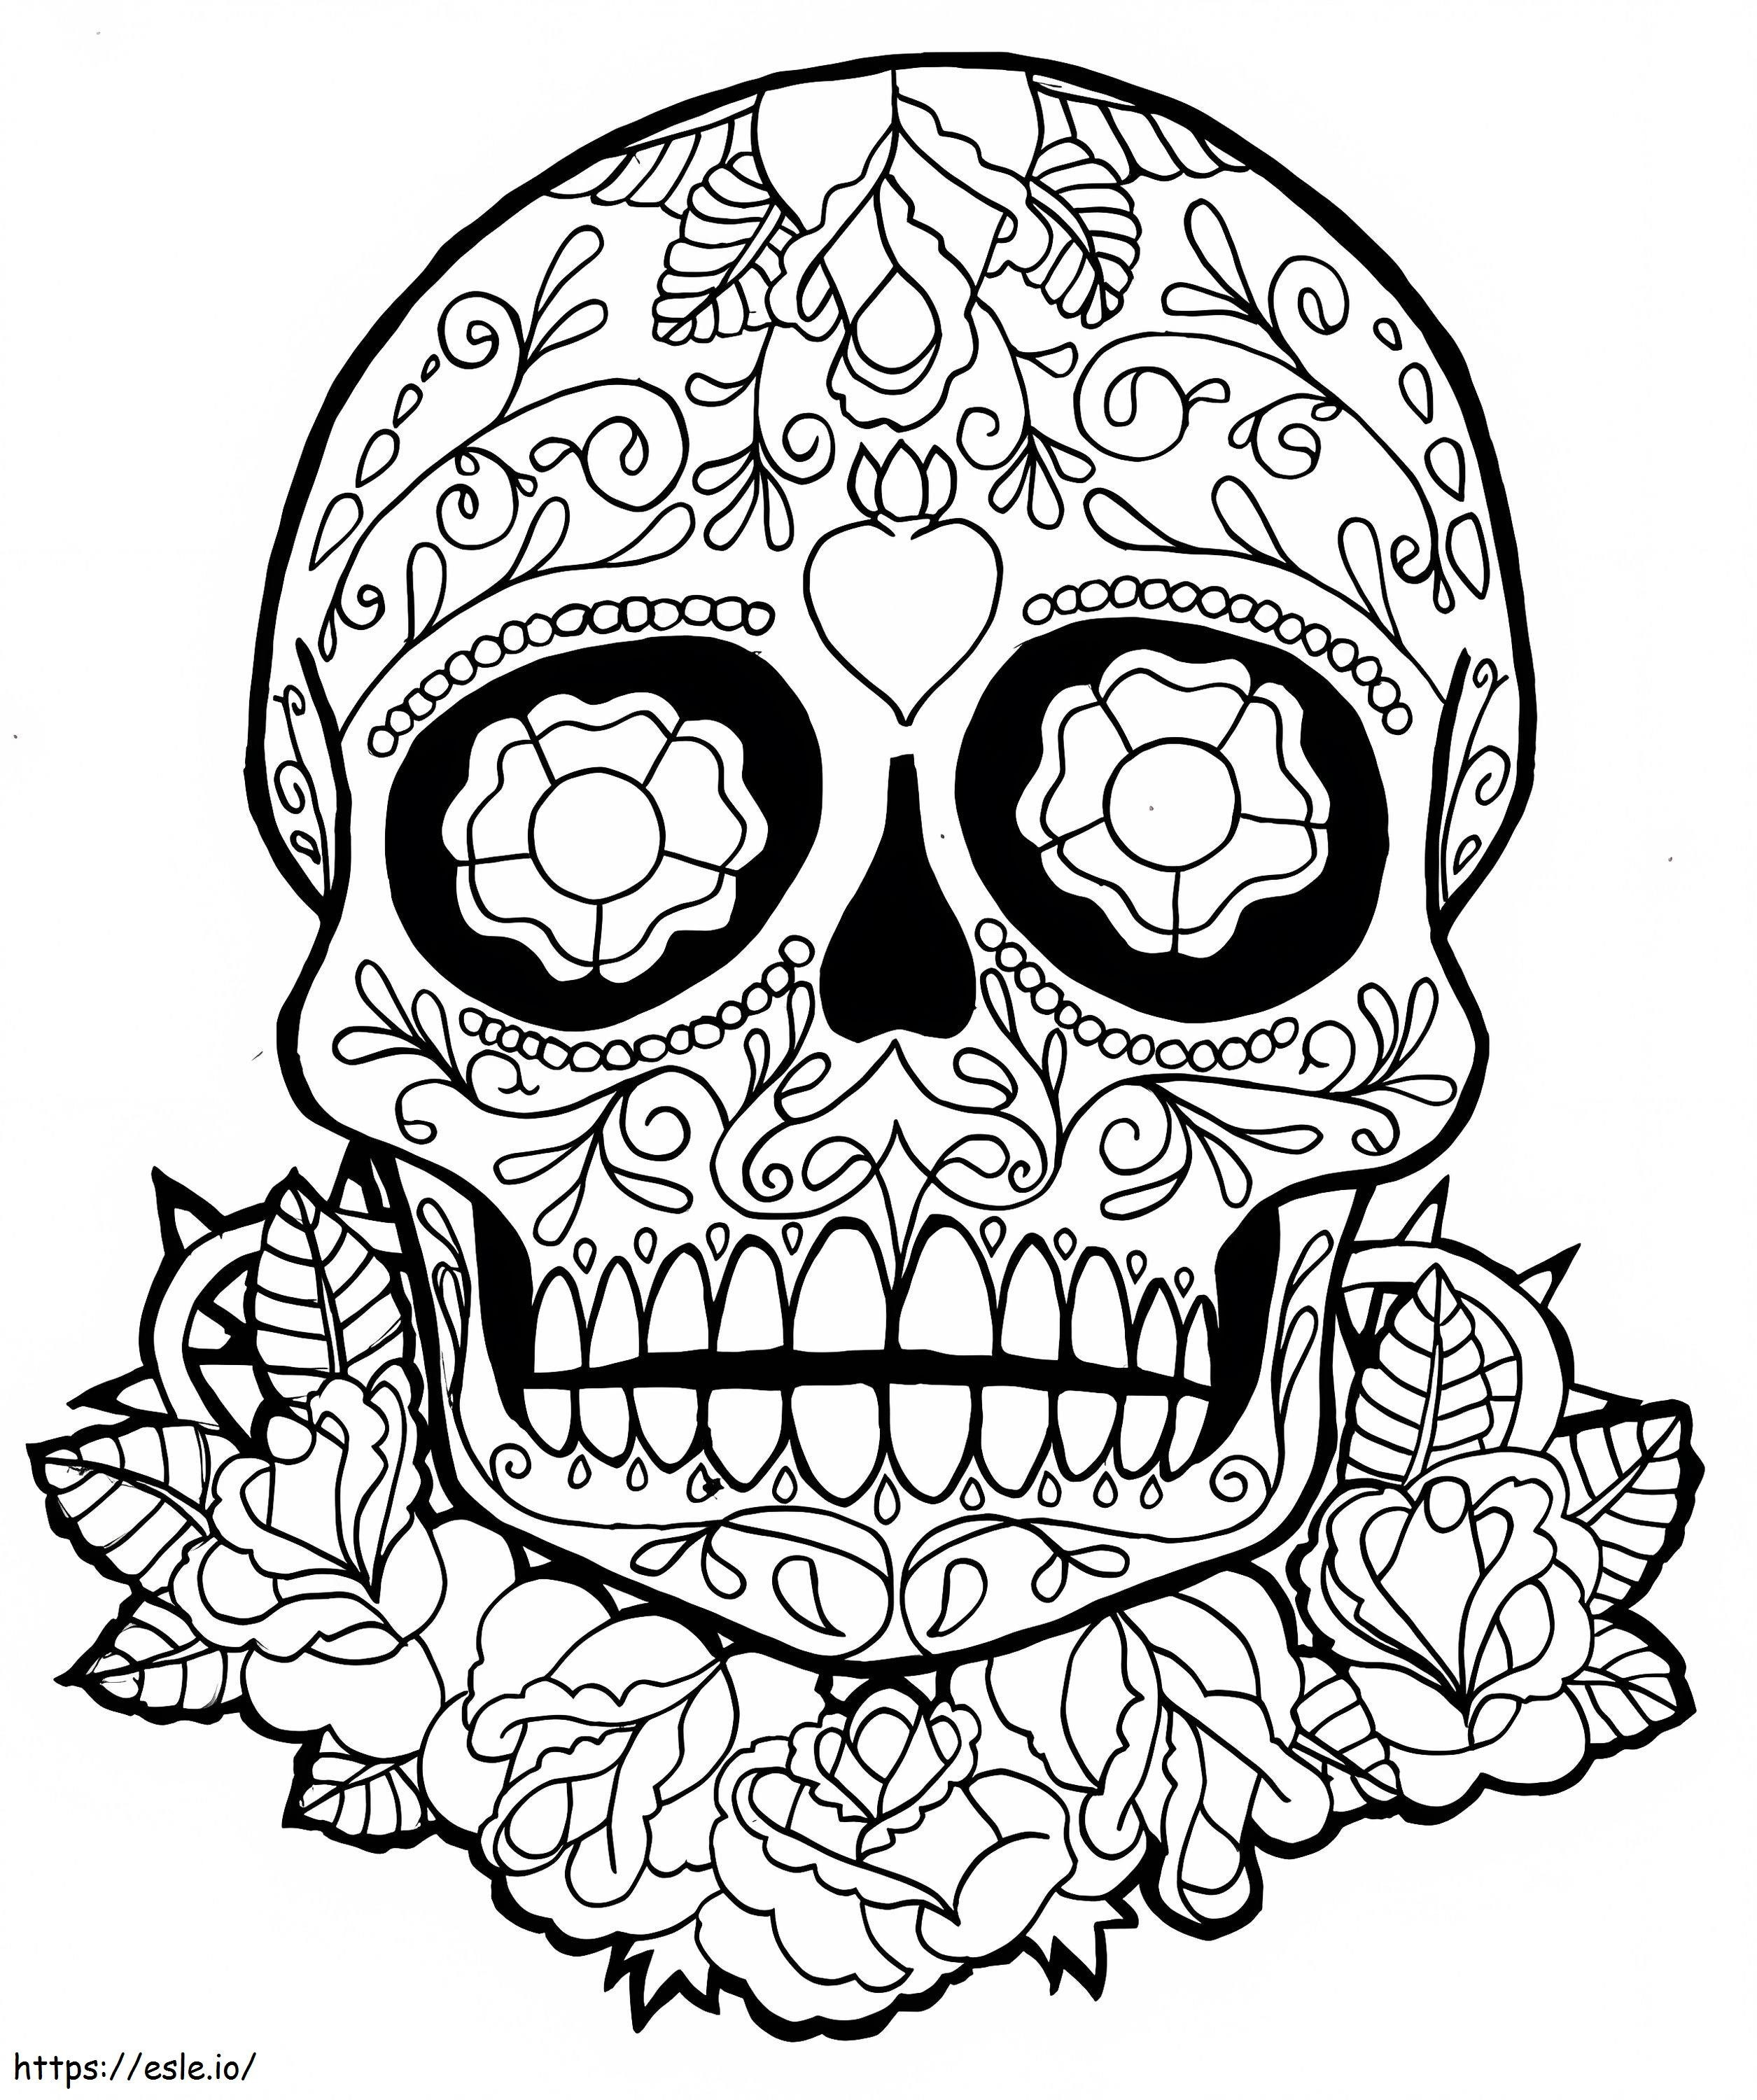 Skull & Leaf & Flower coloring page